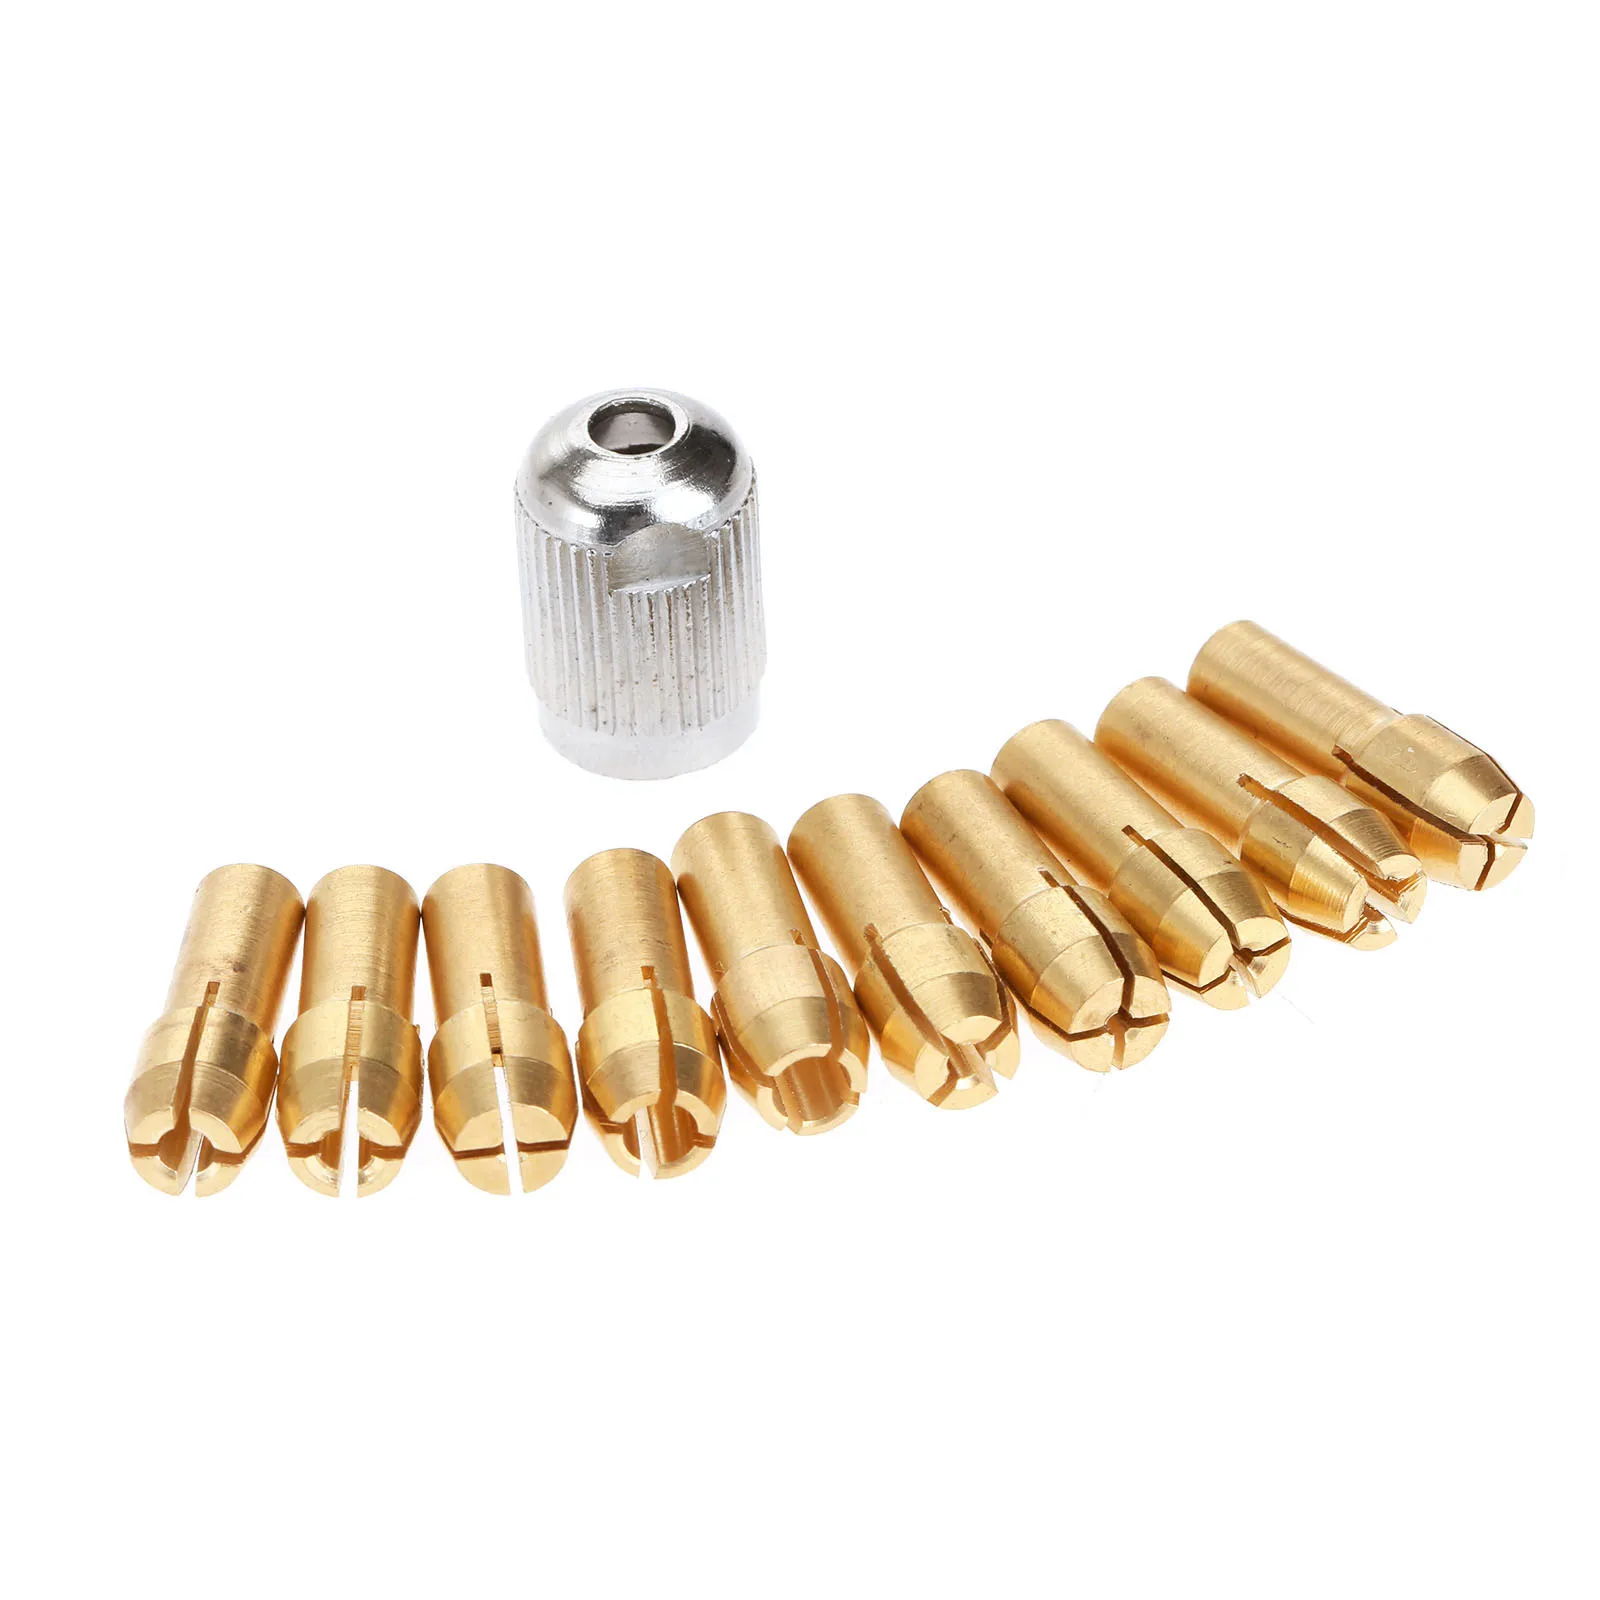 10x Brass Drill Chucks Collet Bit 0.5-3.2mm 4.8mm Shank Fits Dremel Rotary Tool